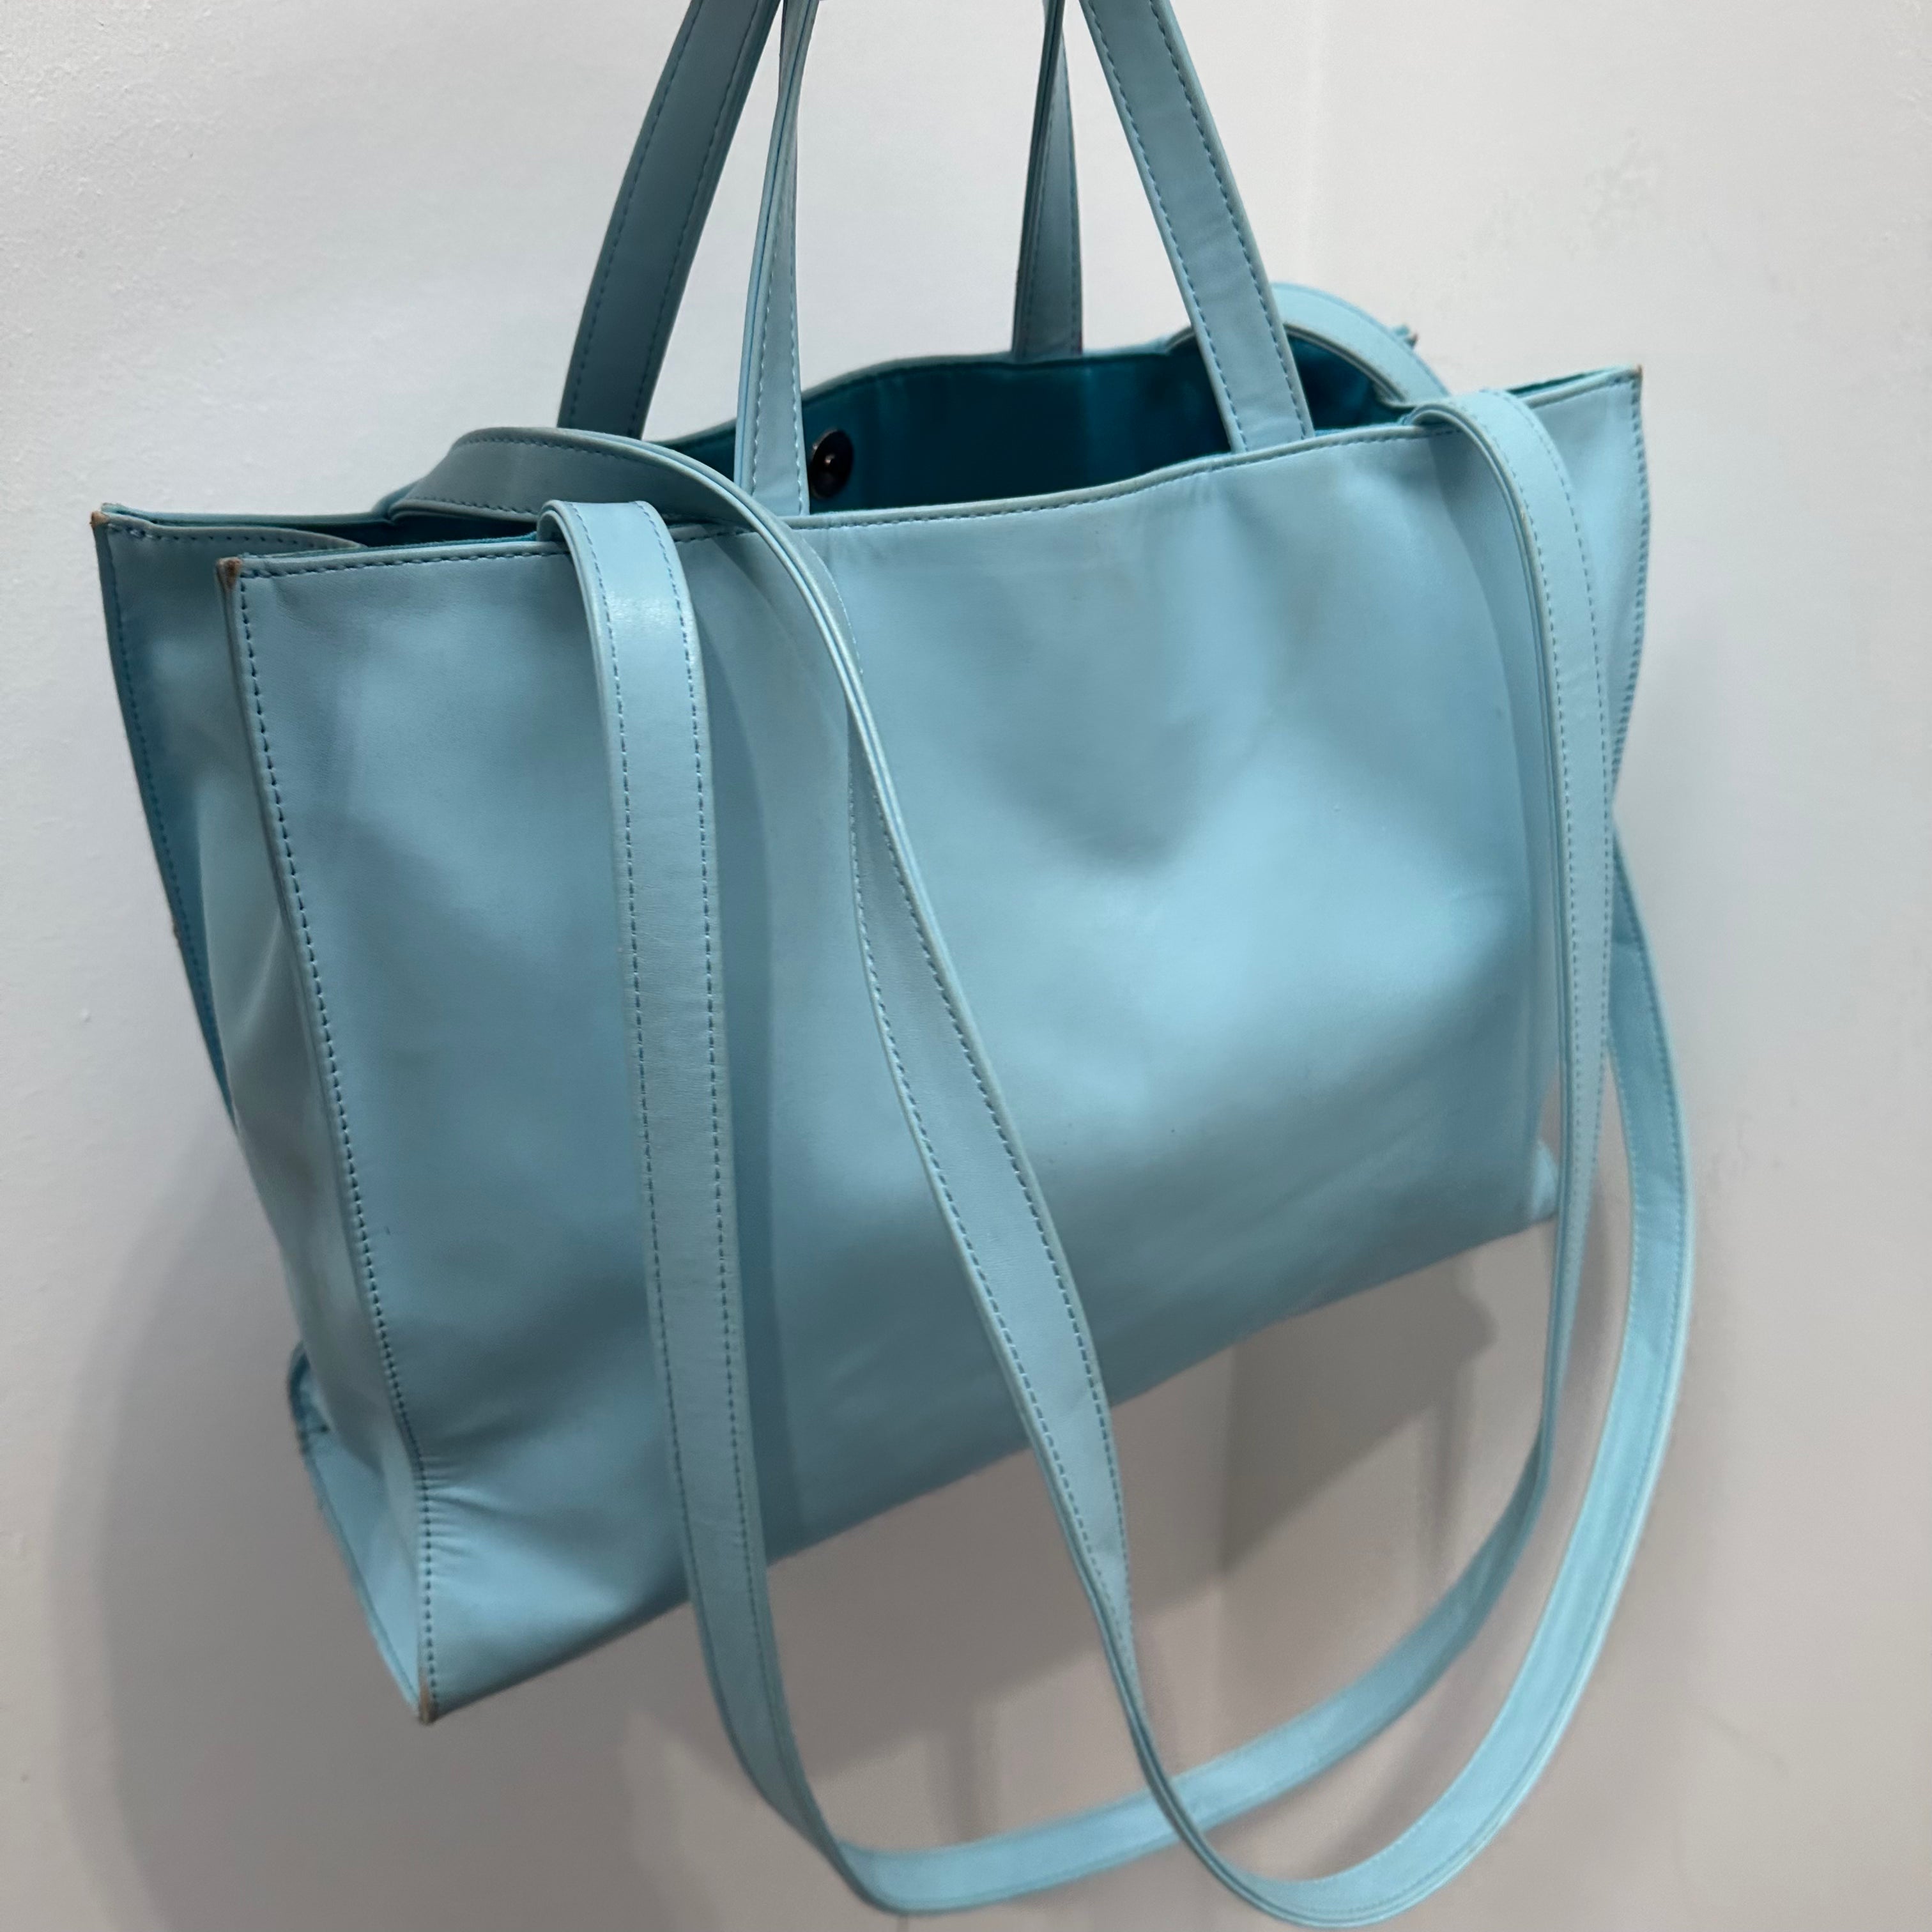 Telfar Bag Review: Large Pool Blue Shopping Bag - KatWalkSF